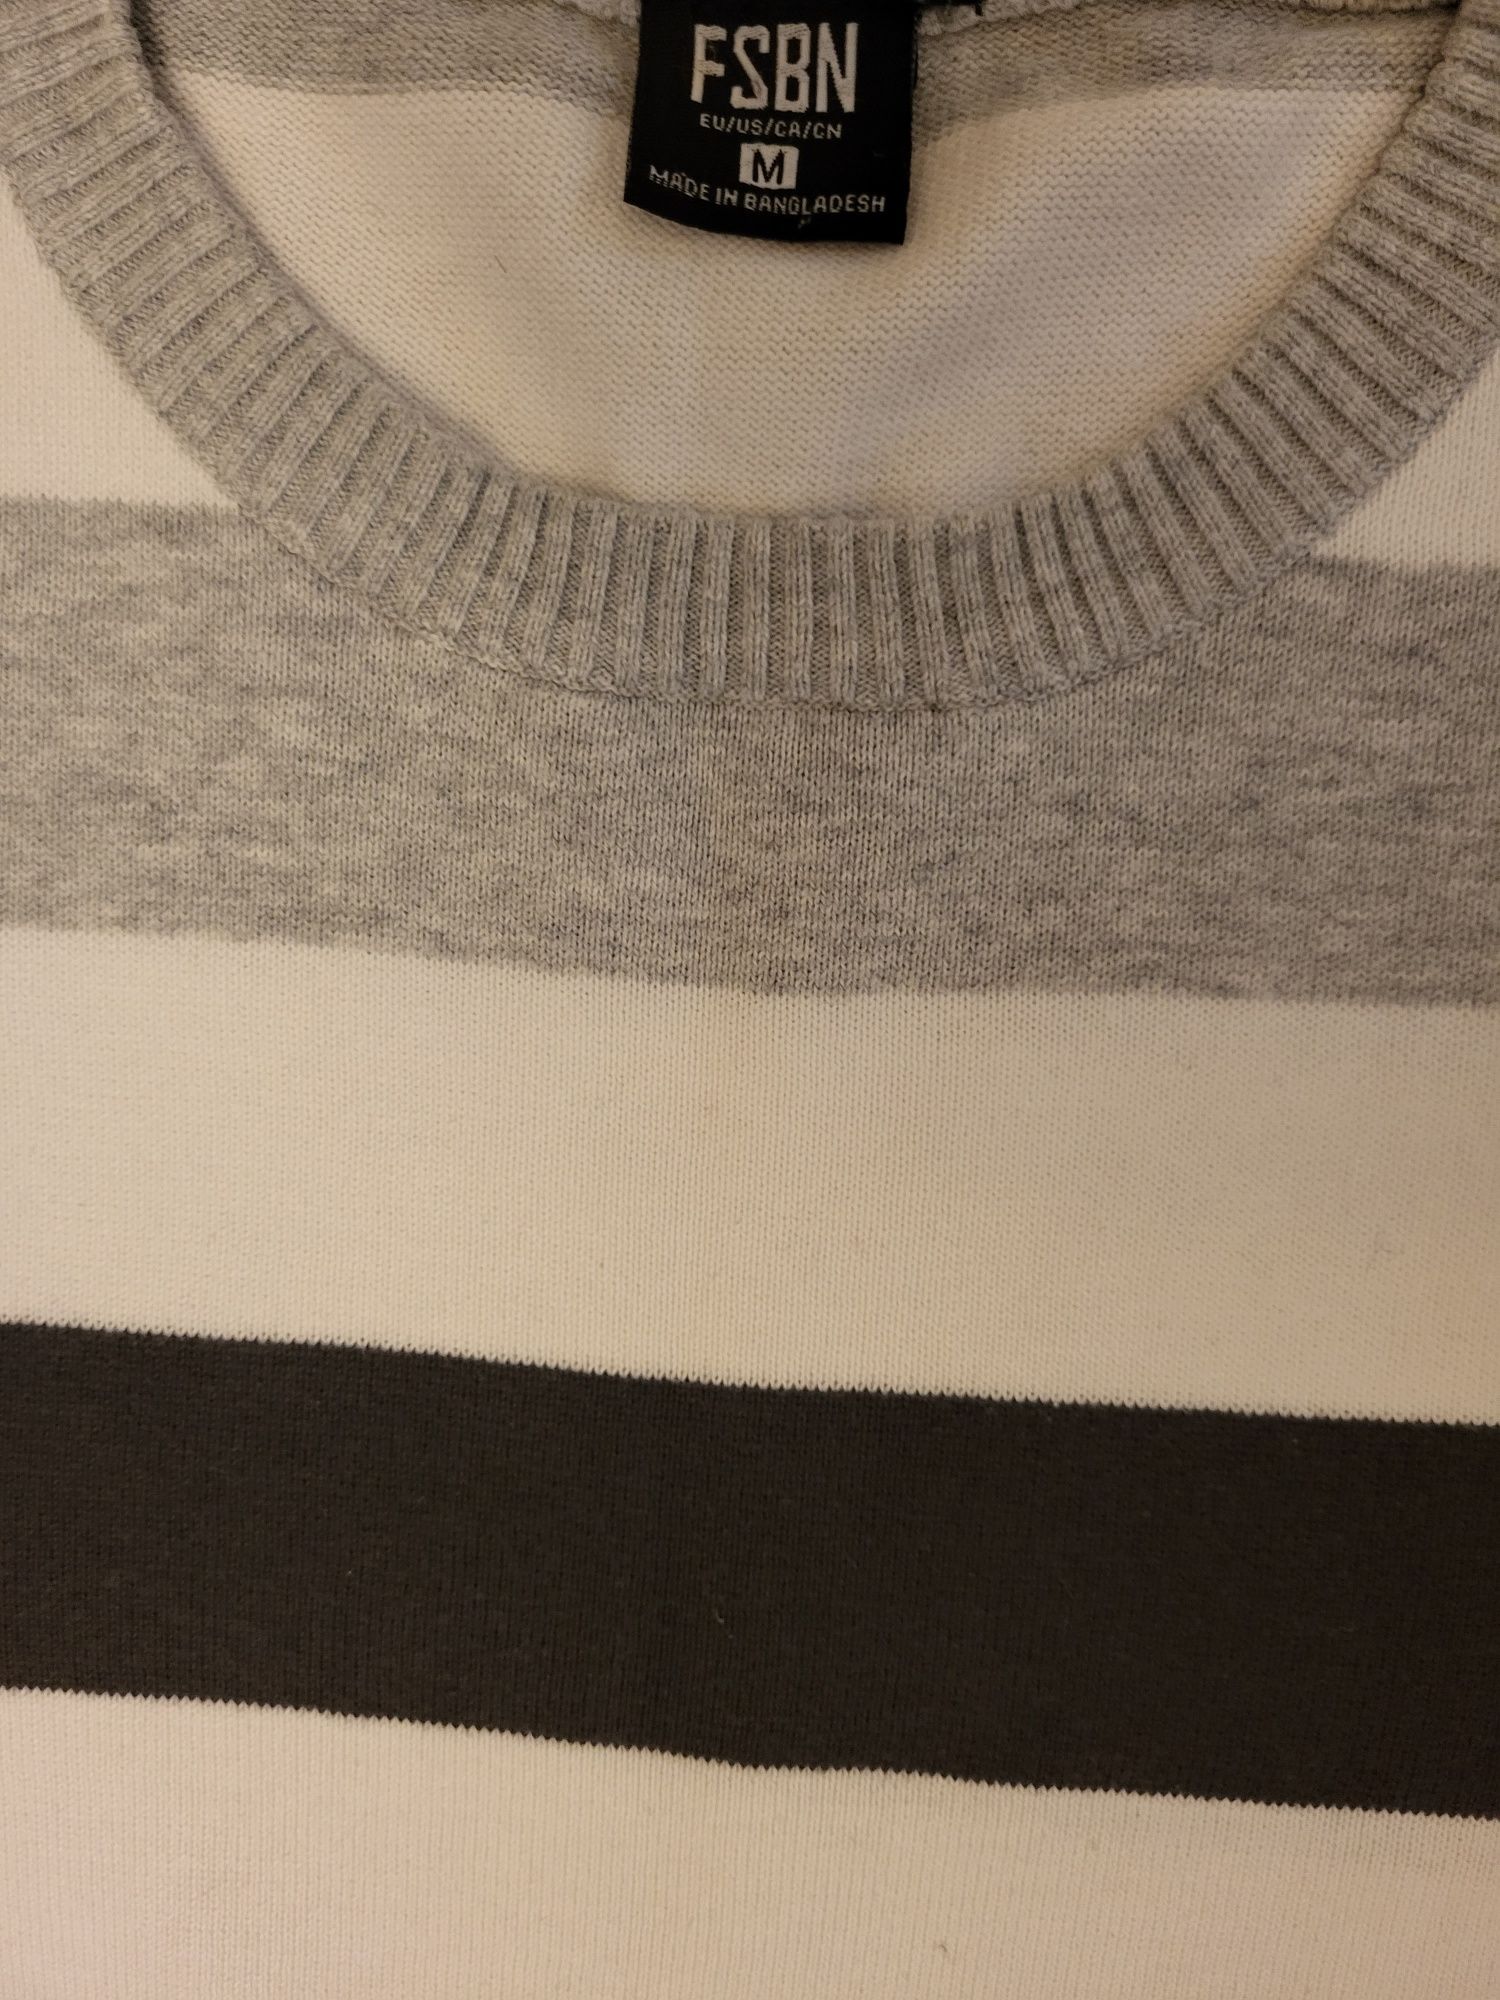 Bluza/pulover New Yorker FSBN Slim Fit, marimea M, 100% bumbac